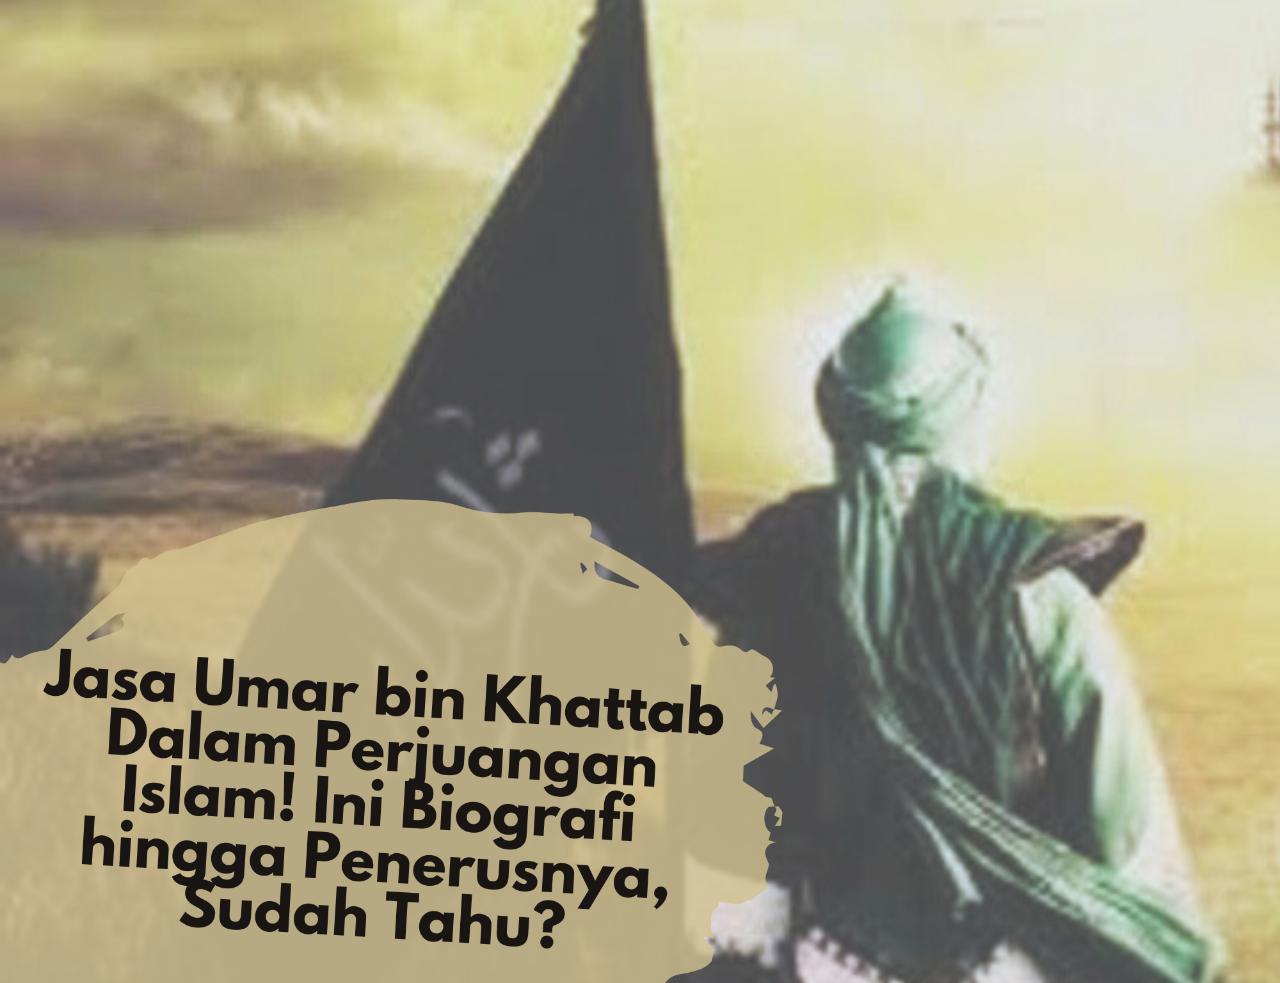 Jasa Umar bin Khattab Dalam Perjuangan Islam! Ini Biografi hingga Penerusnya, Sudah Tahu?